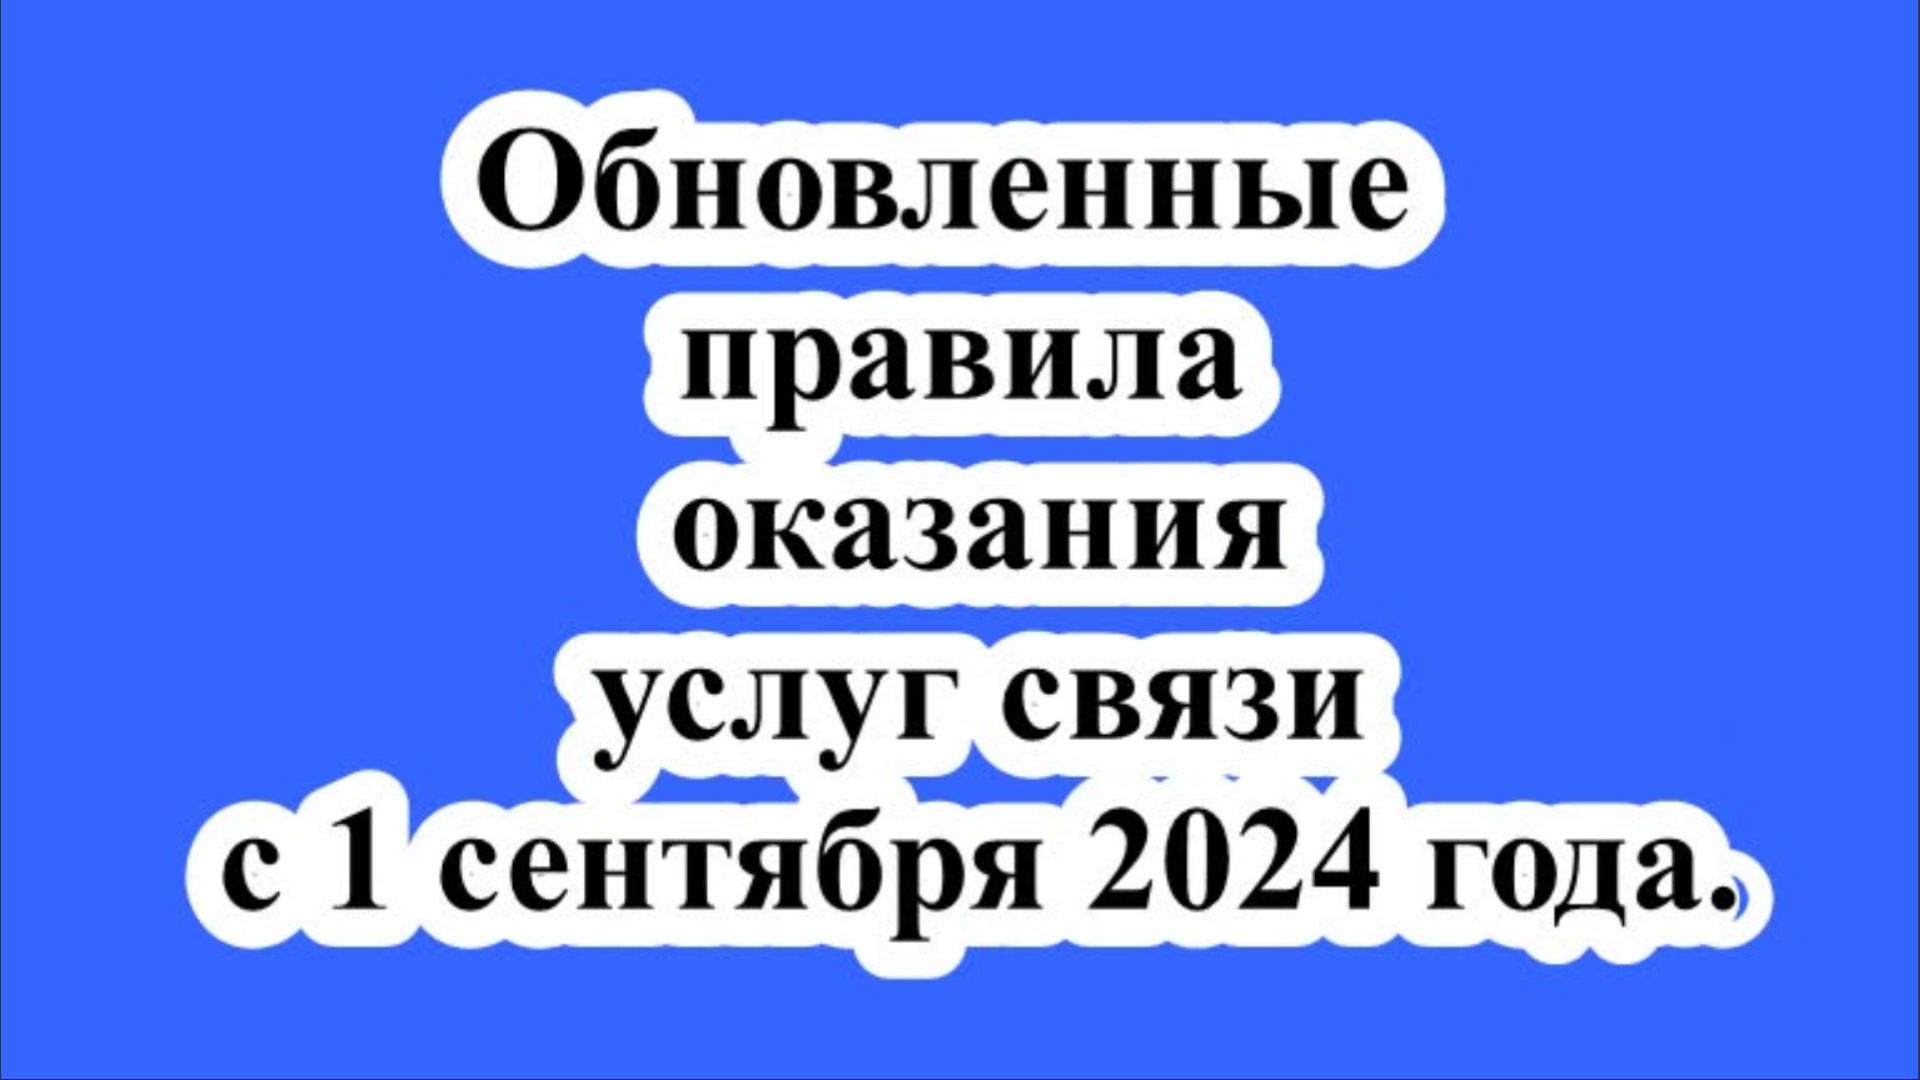 Обновленные правила оказания услуг связи с 1 сентября 2024 года.